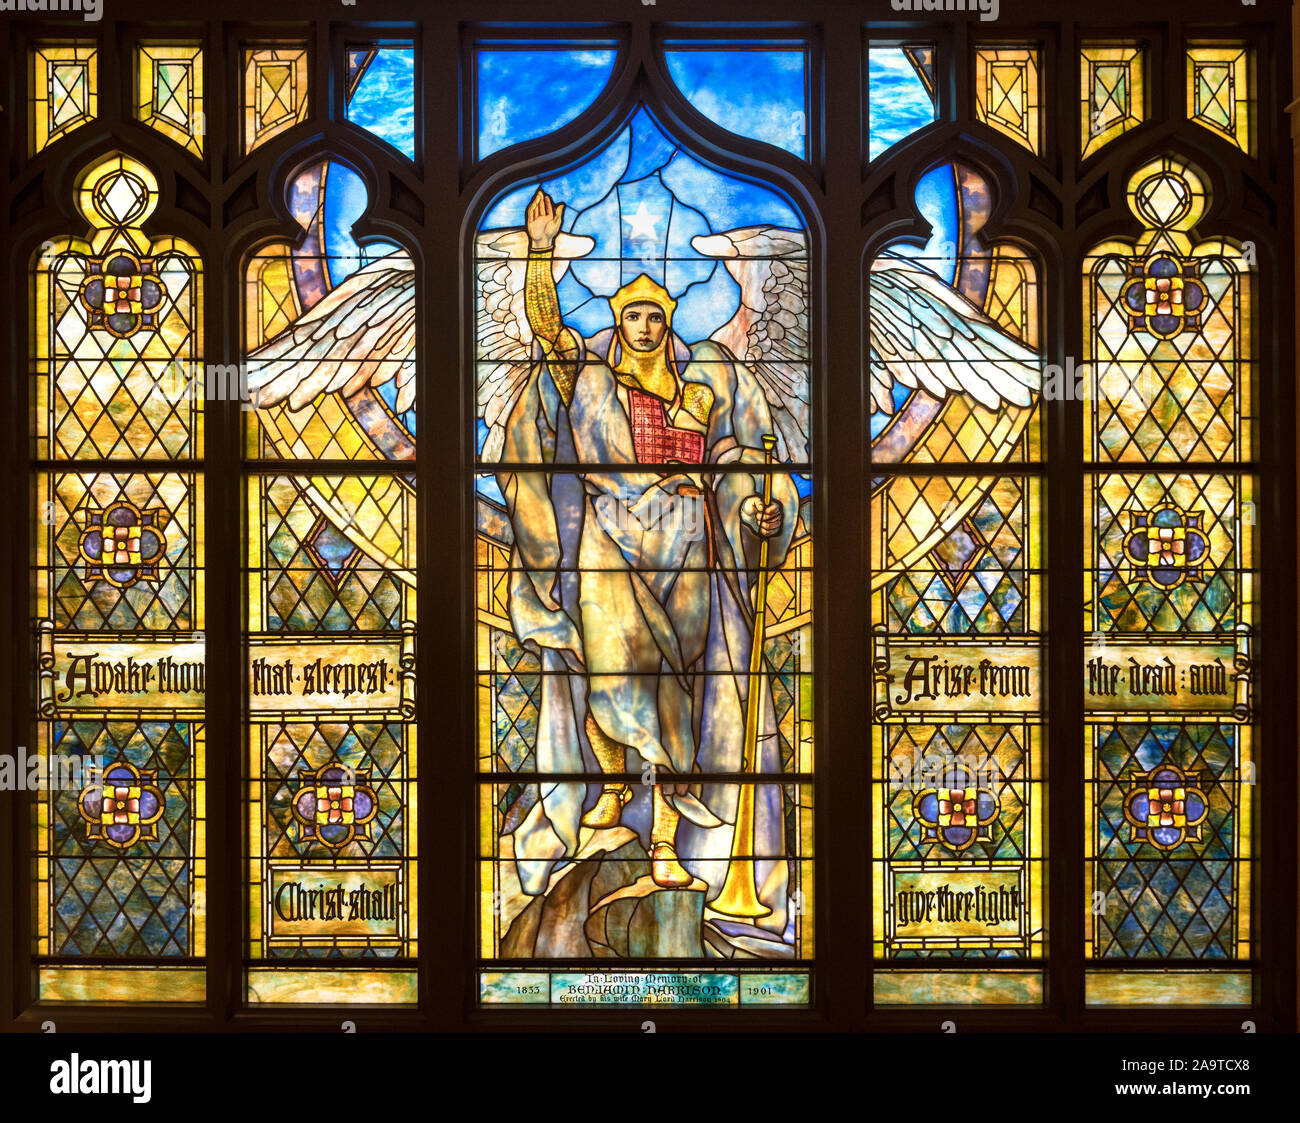 Ange de la résurrection vitrail par Frederick Wilson (Designer) et Tiffany Studios, 1903/4. Musée d'art d'Indianapolis, Indiana, USA Banque D'Images